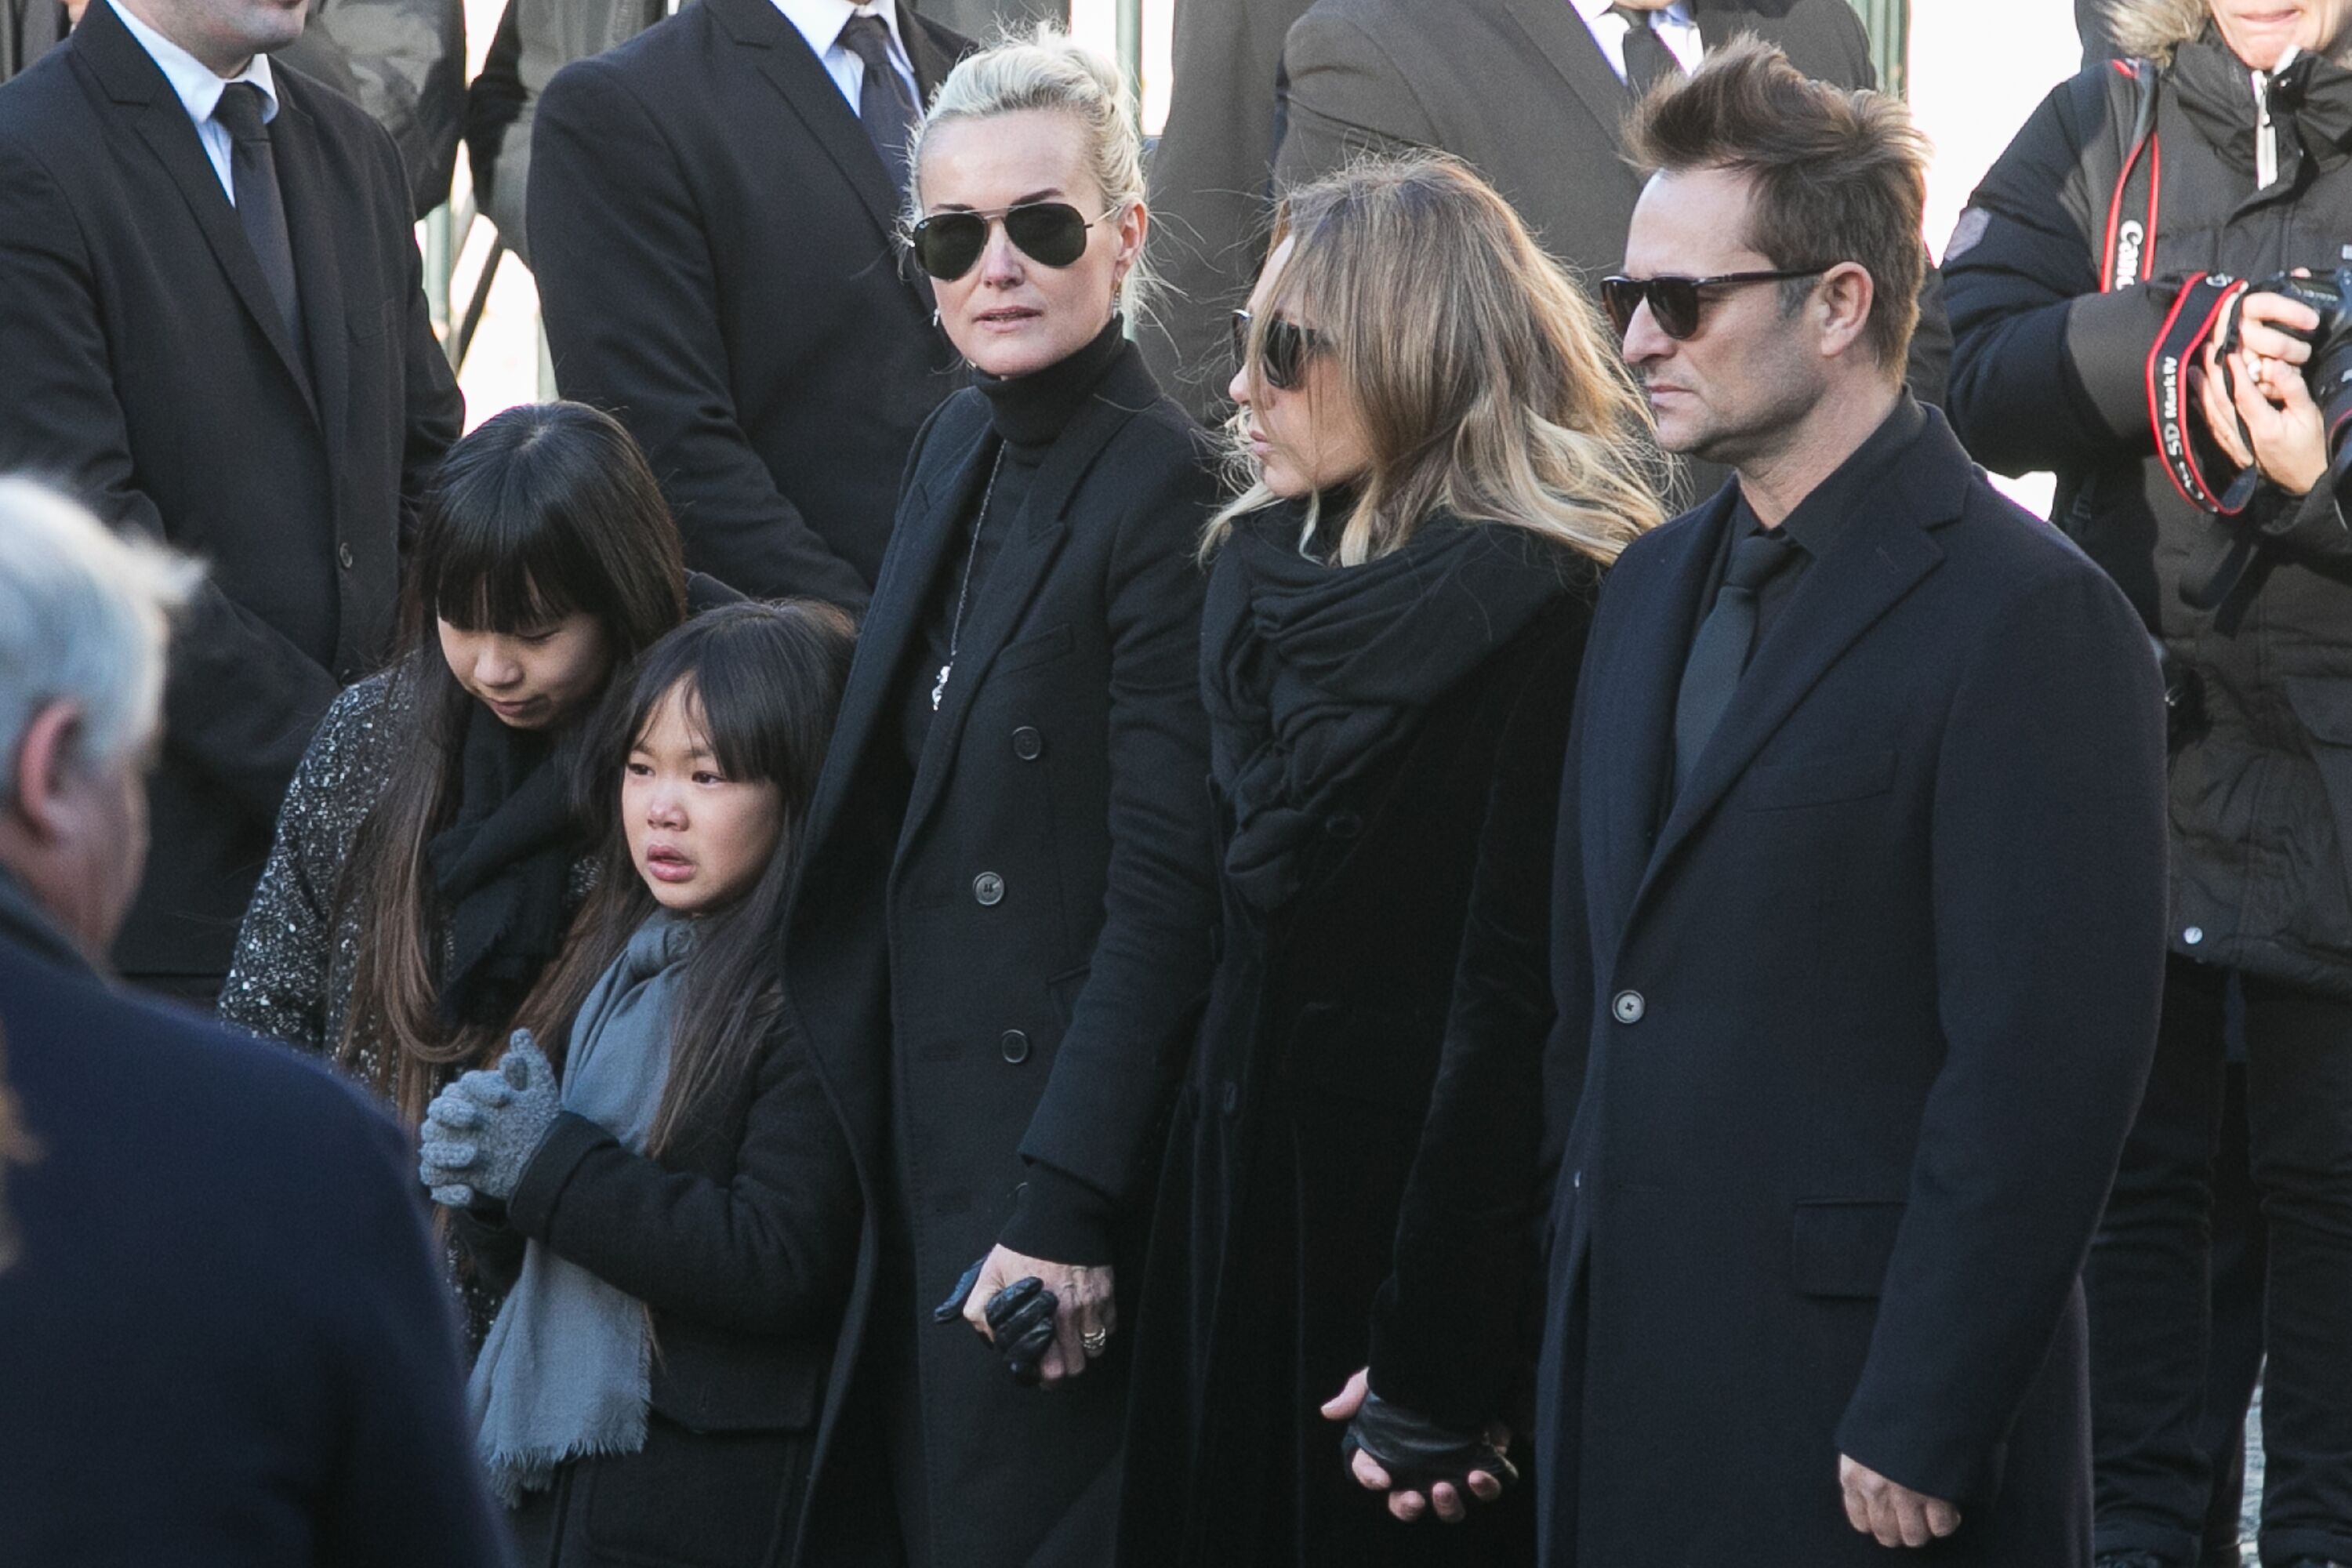 Jade, Joy, Laeticia Hallyday, Laura Smet et David Hallyday sont vus lors des funérailles de Johnny Hallyday à l'église De La Madeleine à Paris, France. | Photo : Getty Images